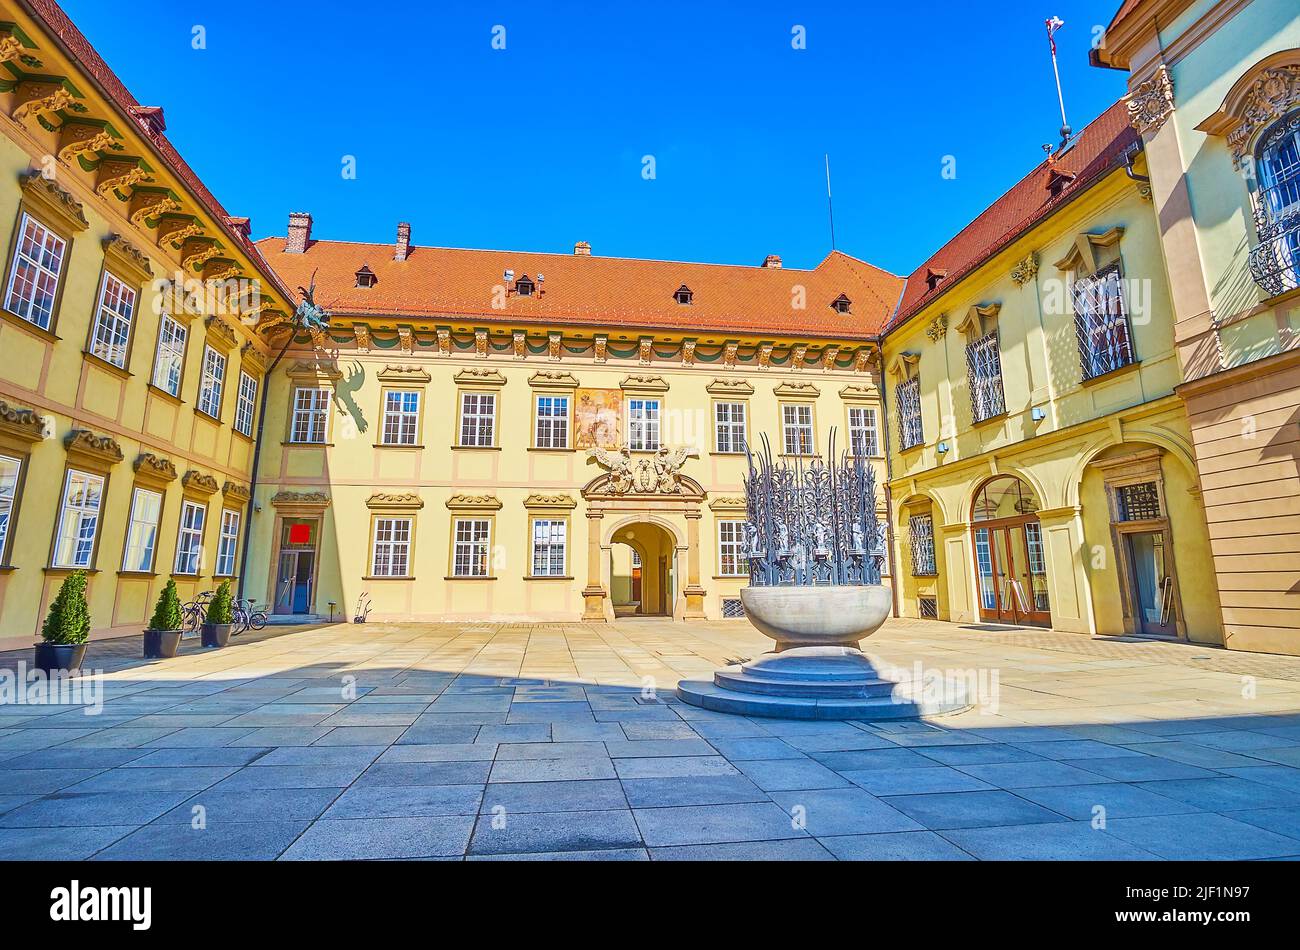 La fontaine pittoresque au milieu de la cour de Nova Radnice (nouvel hôtel de ville) de Brno, République tchèque Banque D'Images